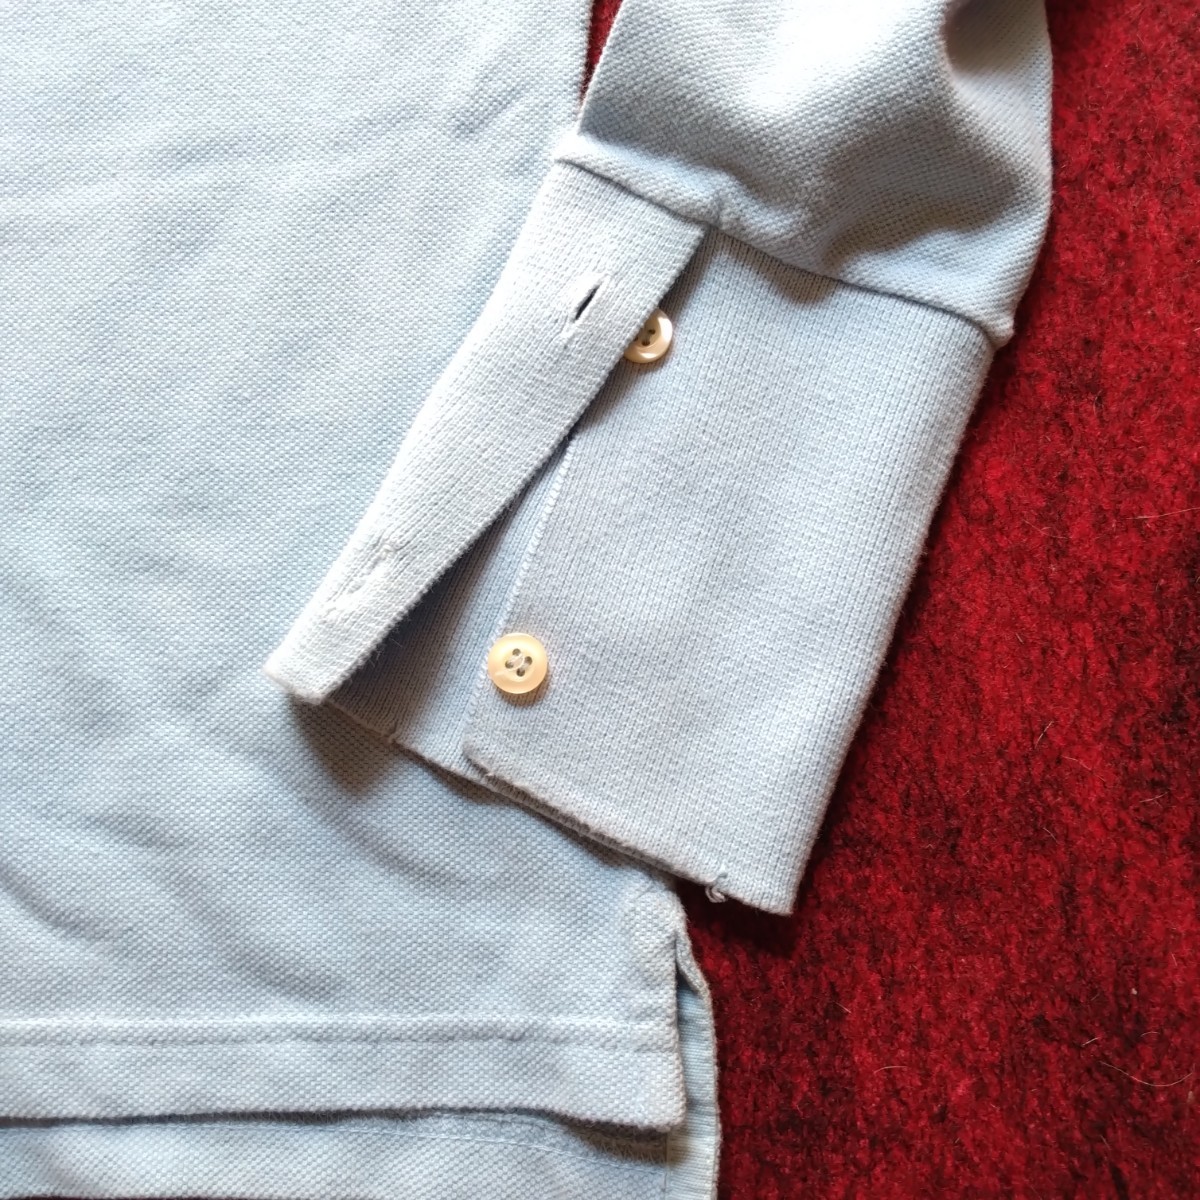  не использовался редкий Vintage HYDROGEN повреждение обработка рубашка-поло с длинным рукавом XS ITALIA Logo 2004 год первый период голубой на месте покупка fi Len tse унисекс 